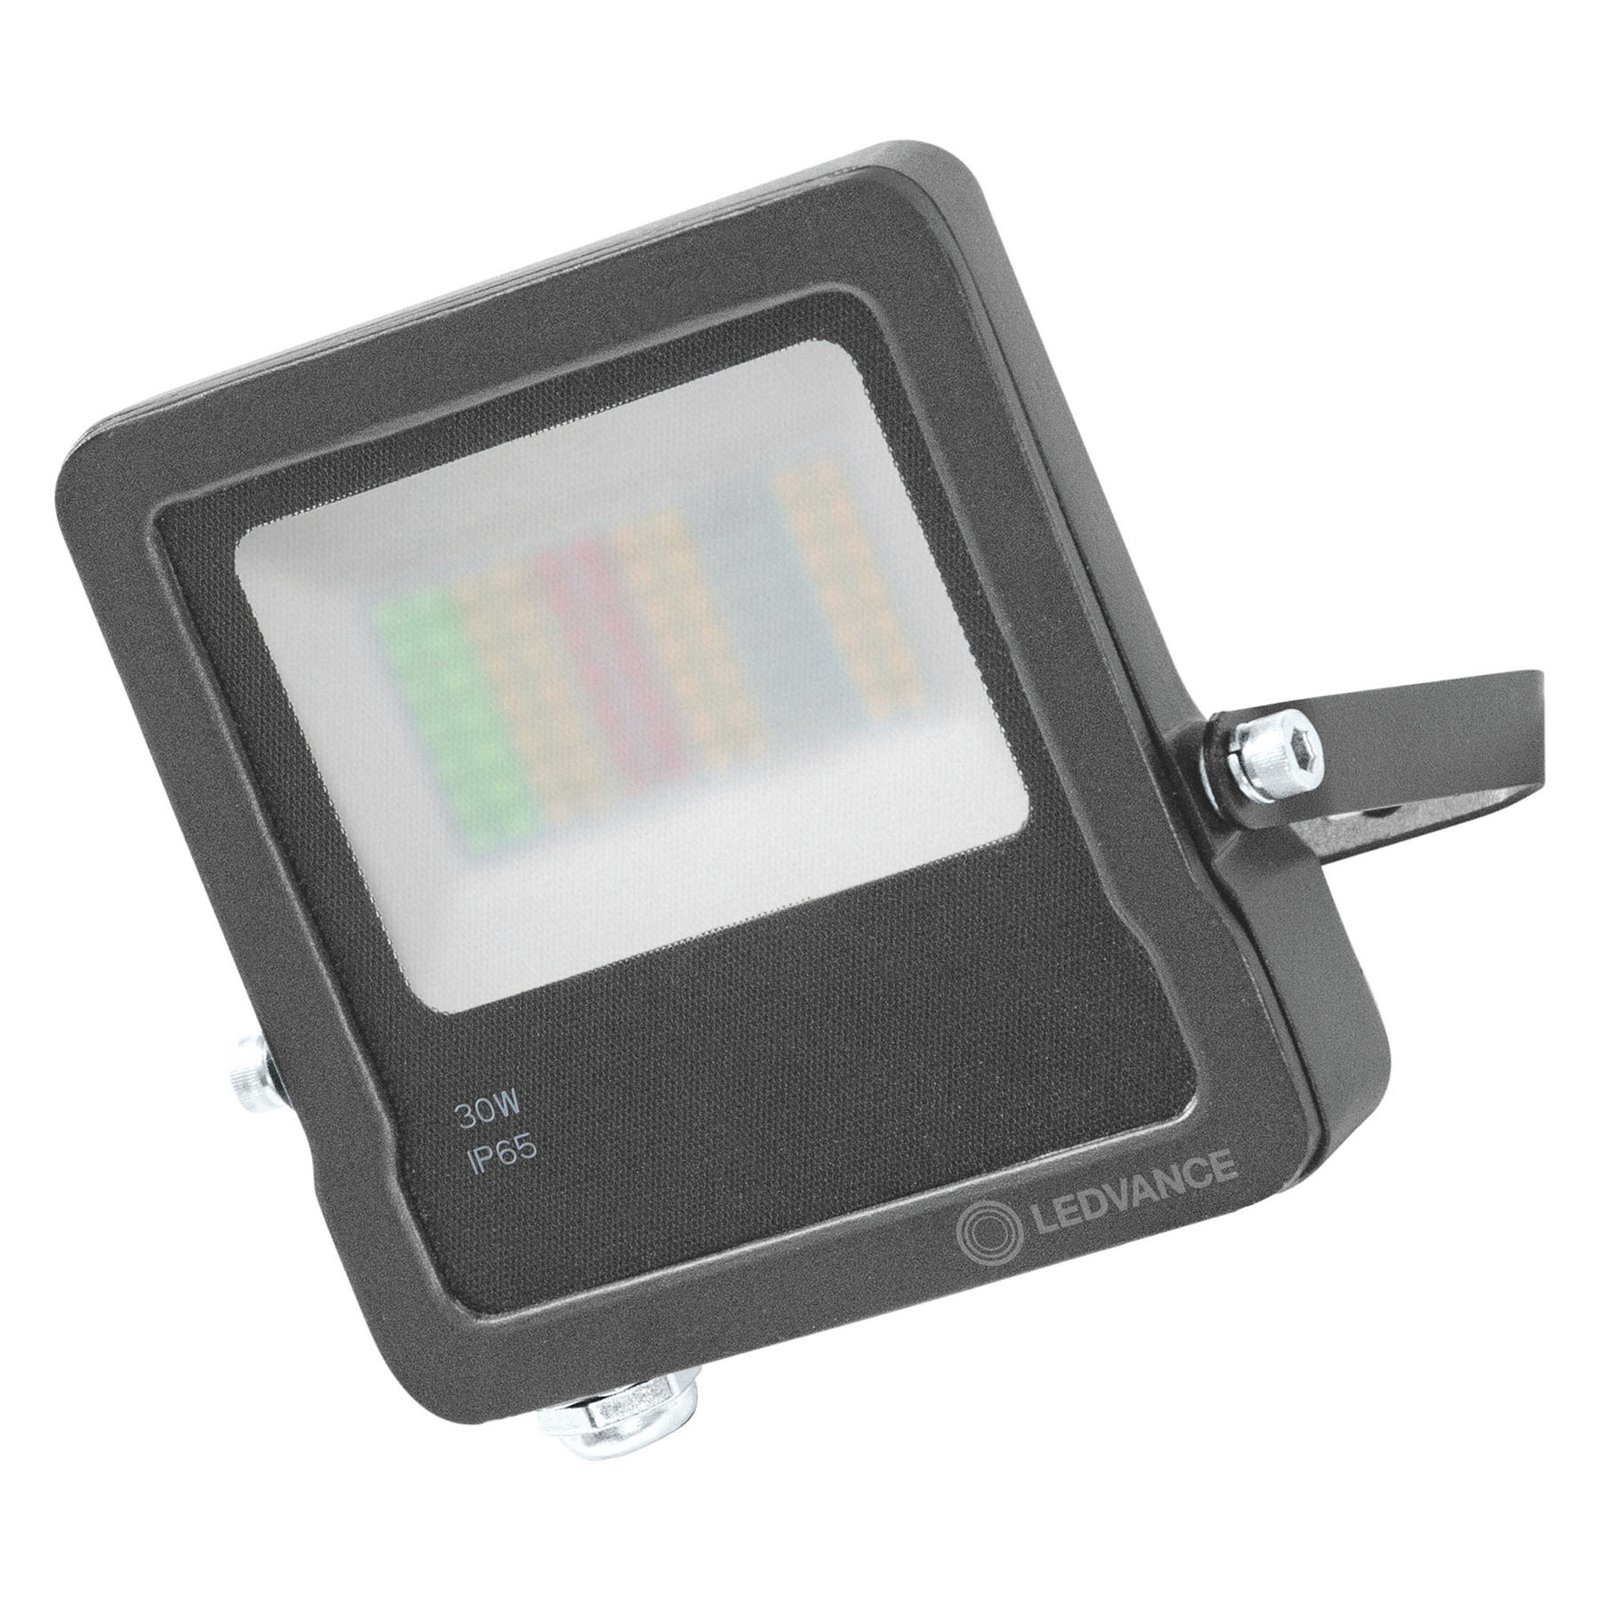 LEDVANCE SMART+ WiFi Floodlight, RGBW, grigio, 30W